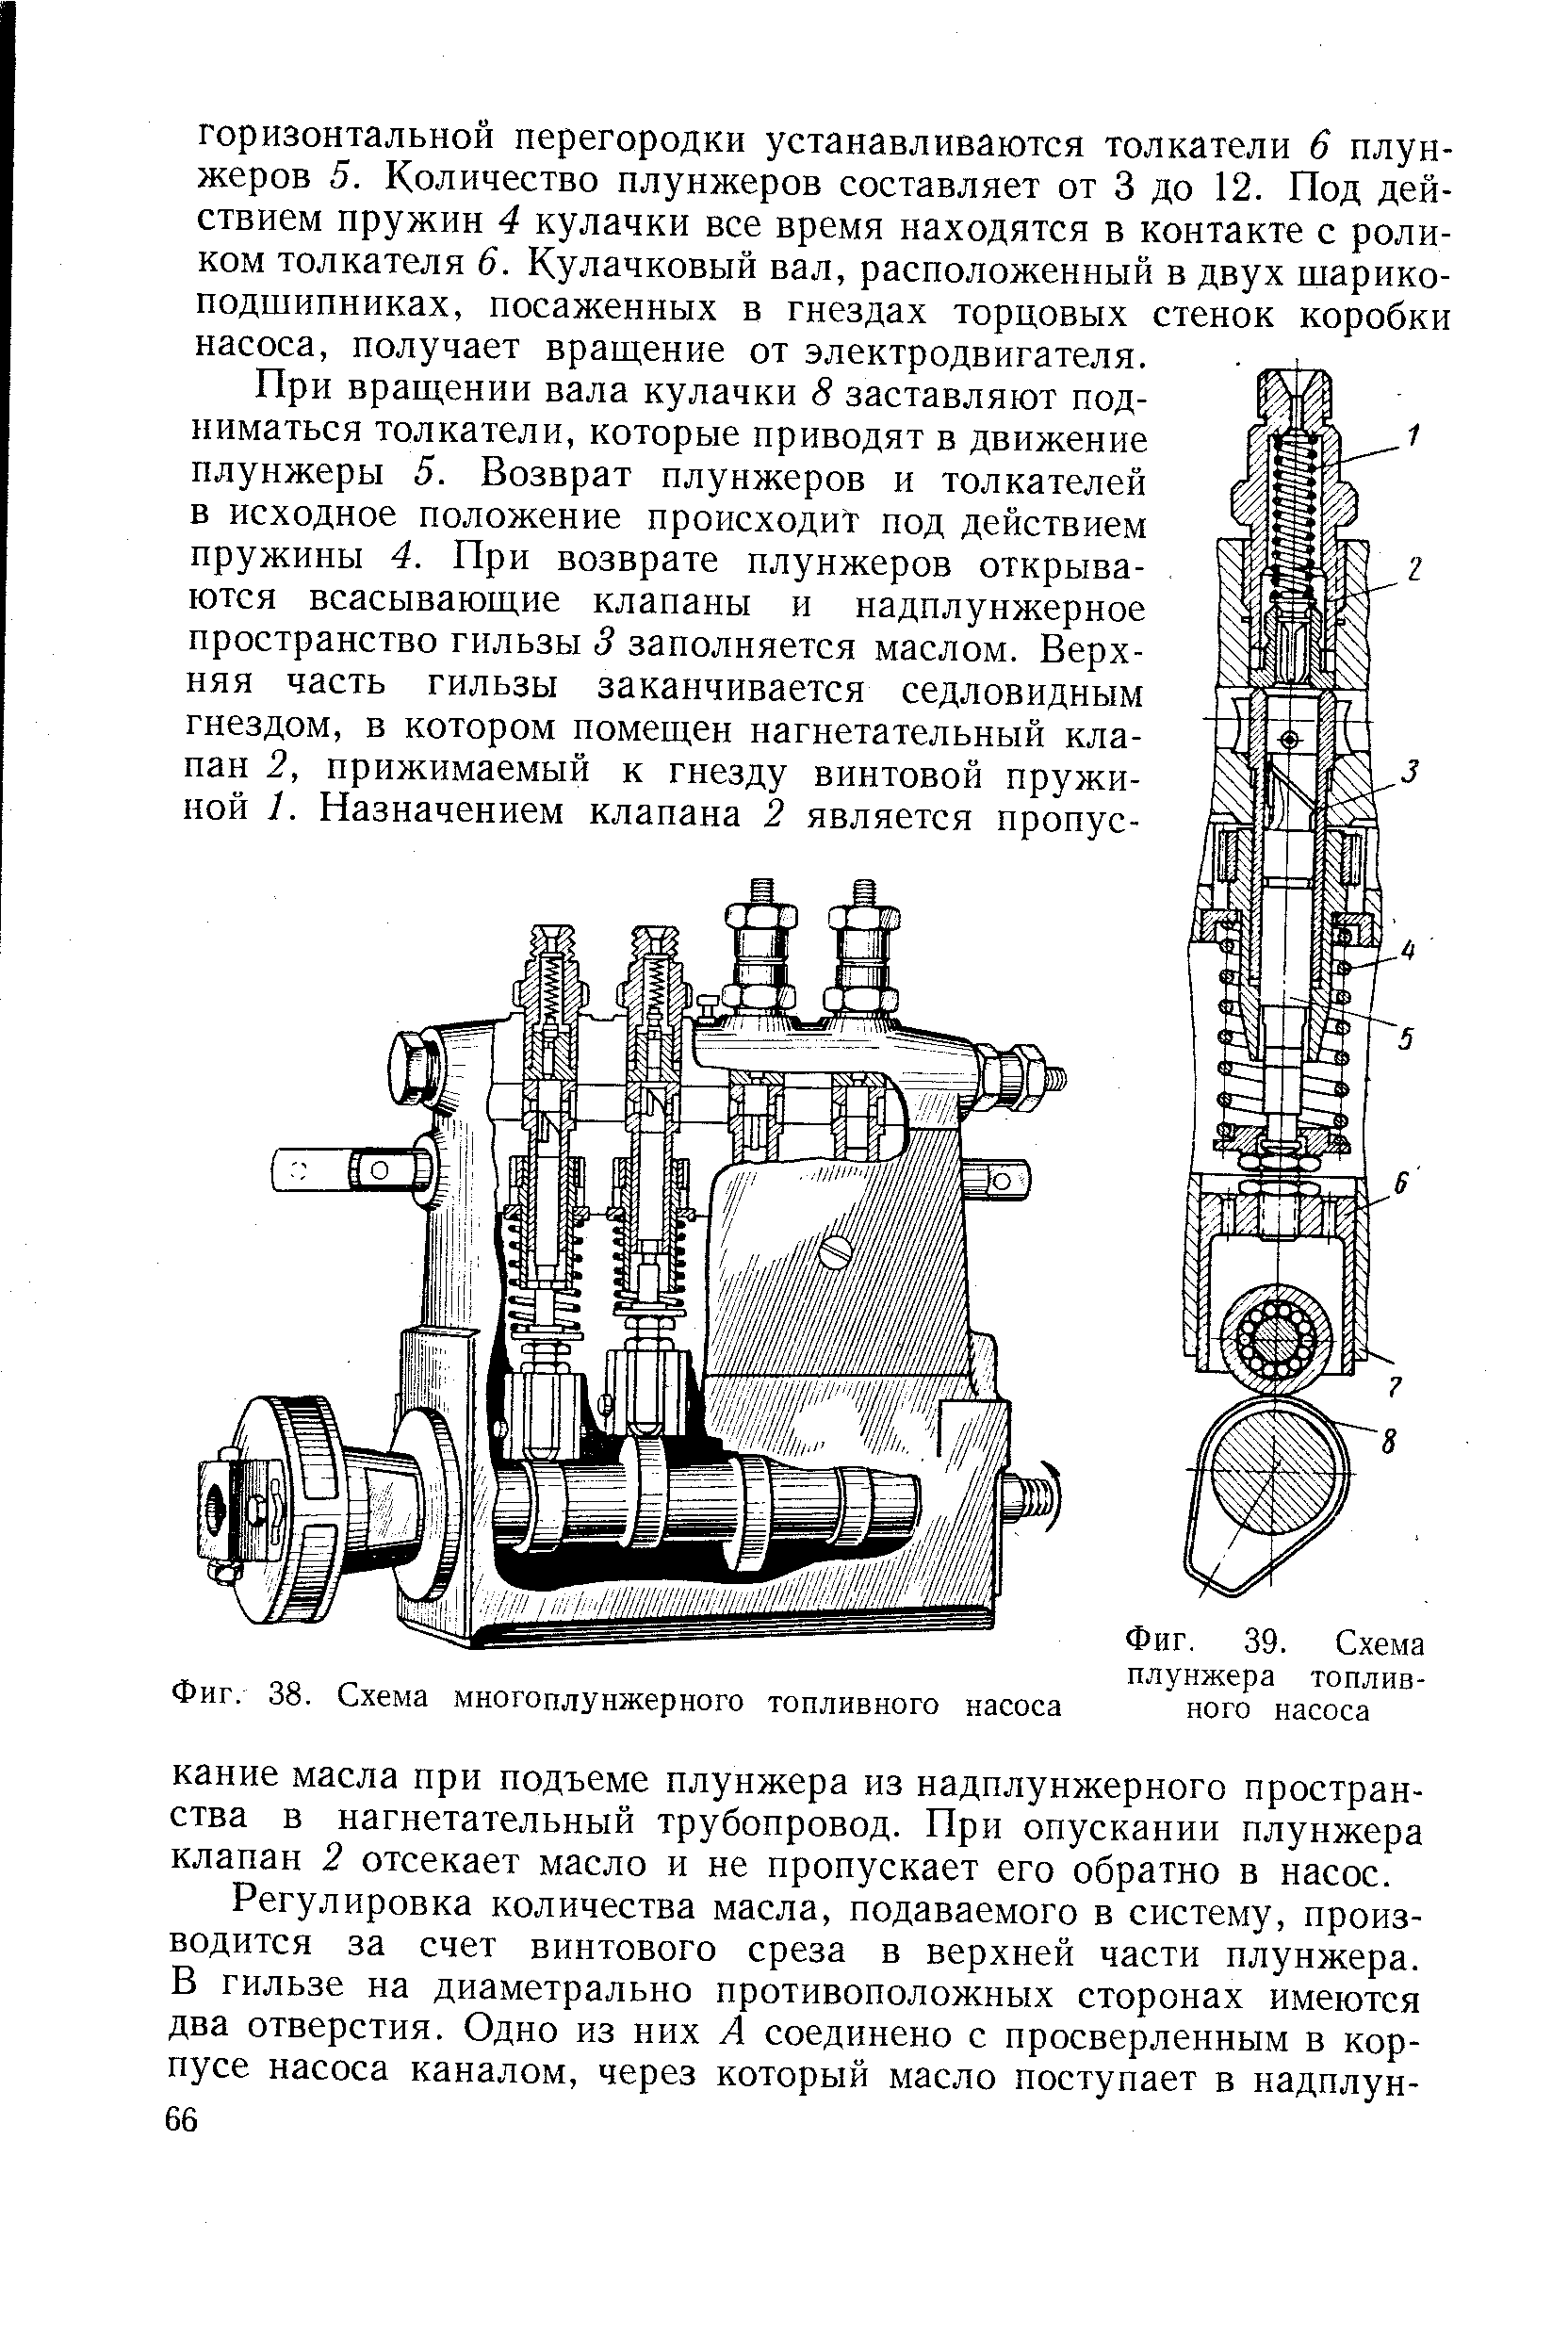 Фиг. 38. Схема многоплунжерного топливного насоса
